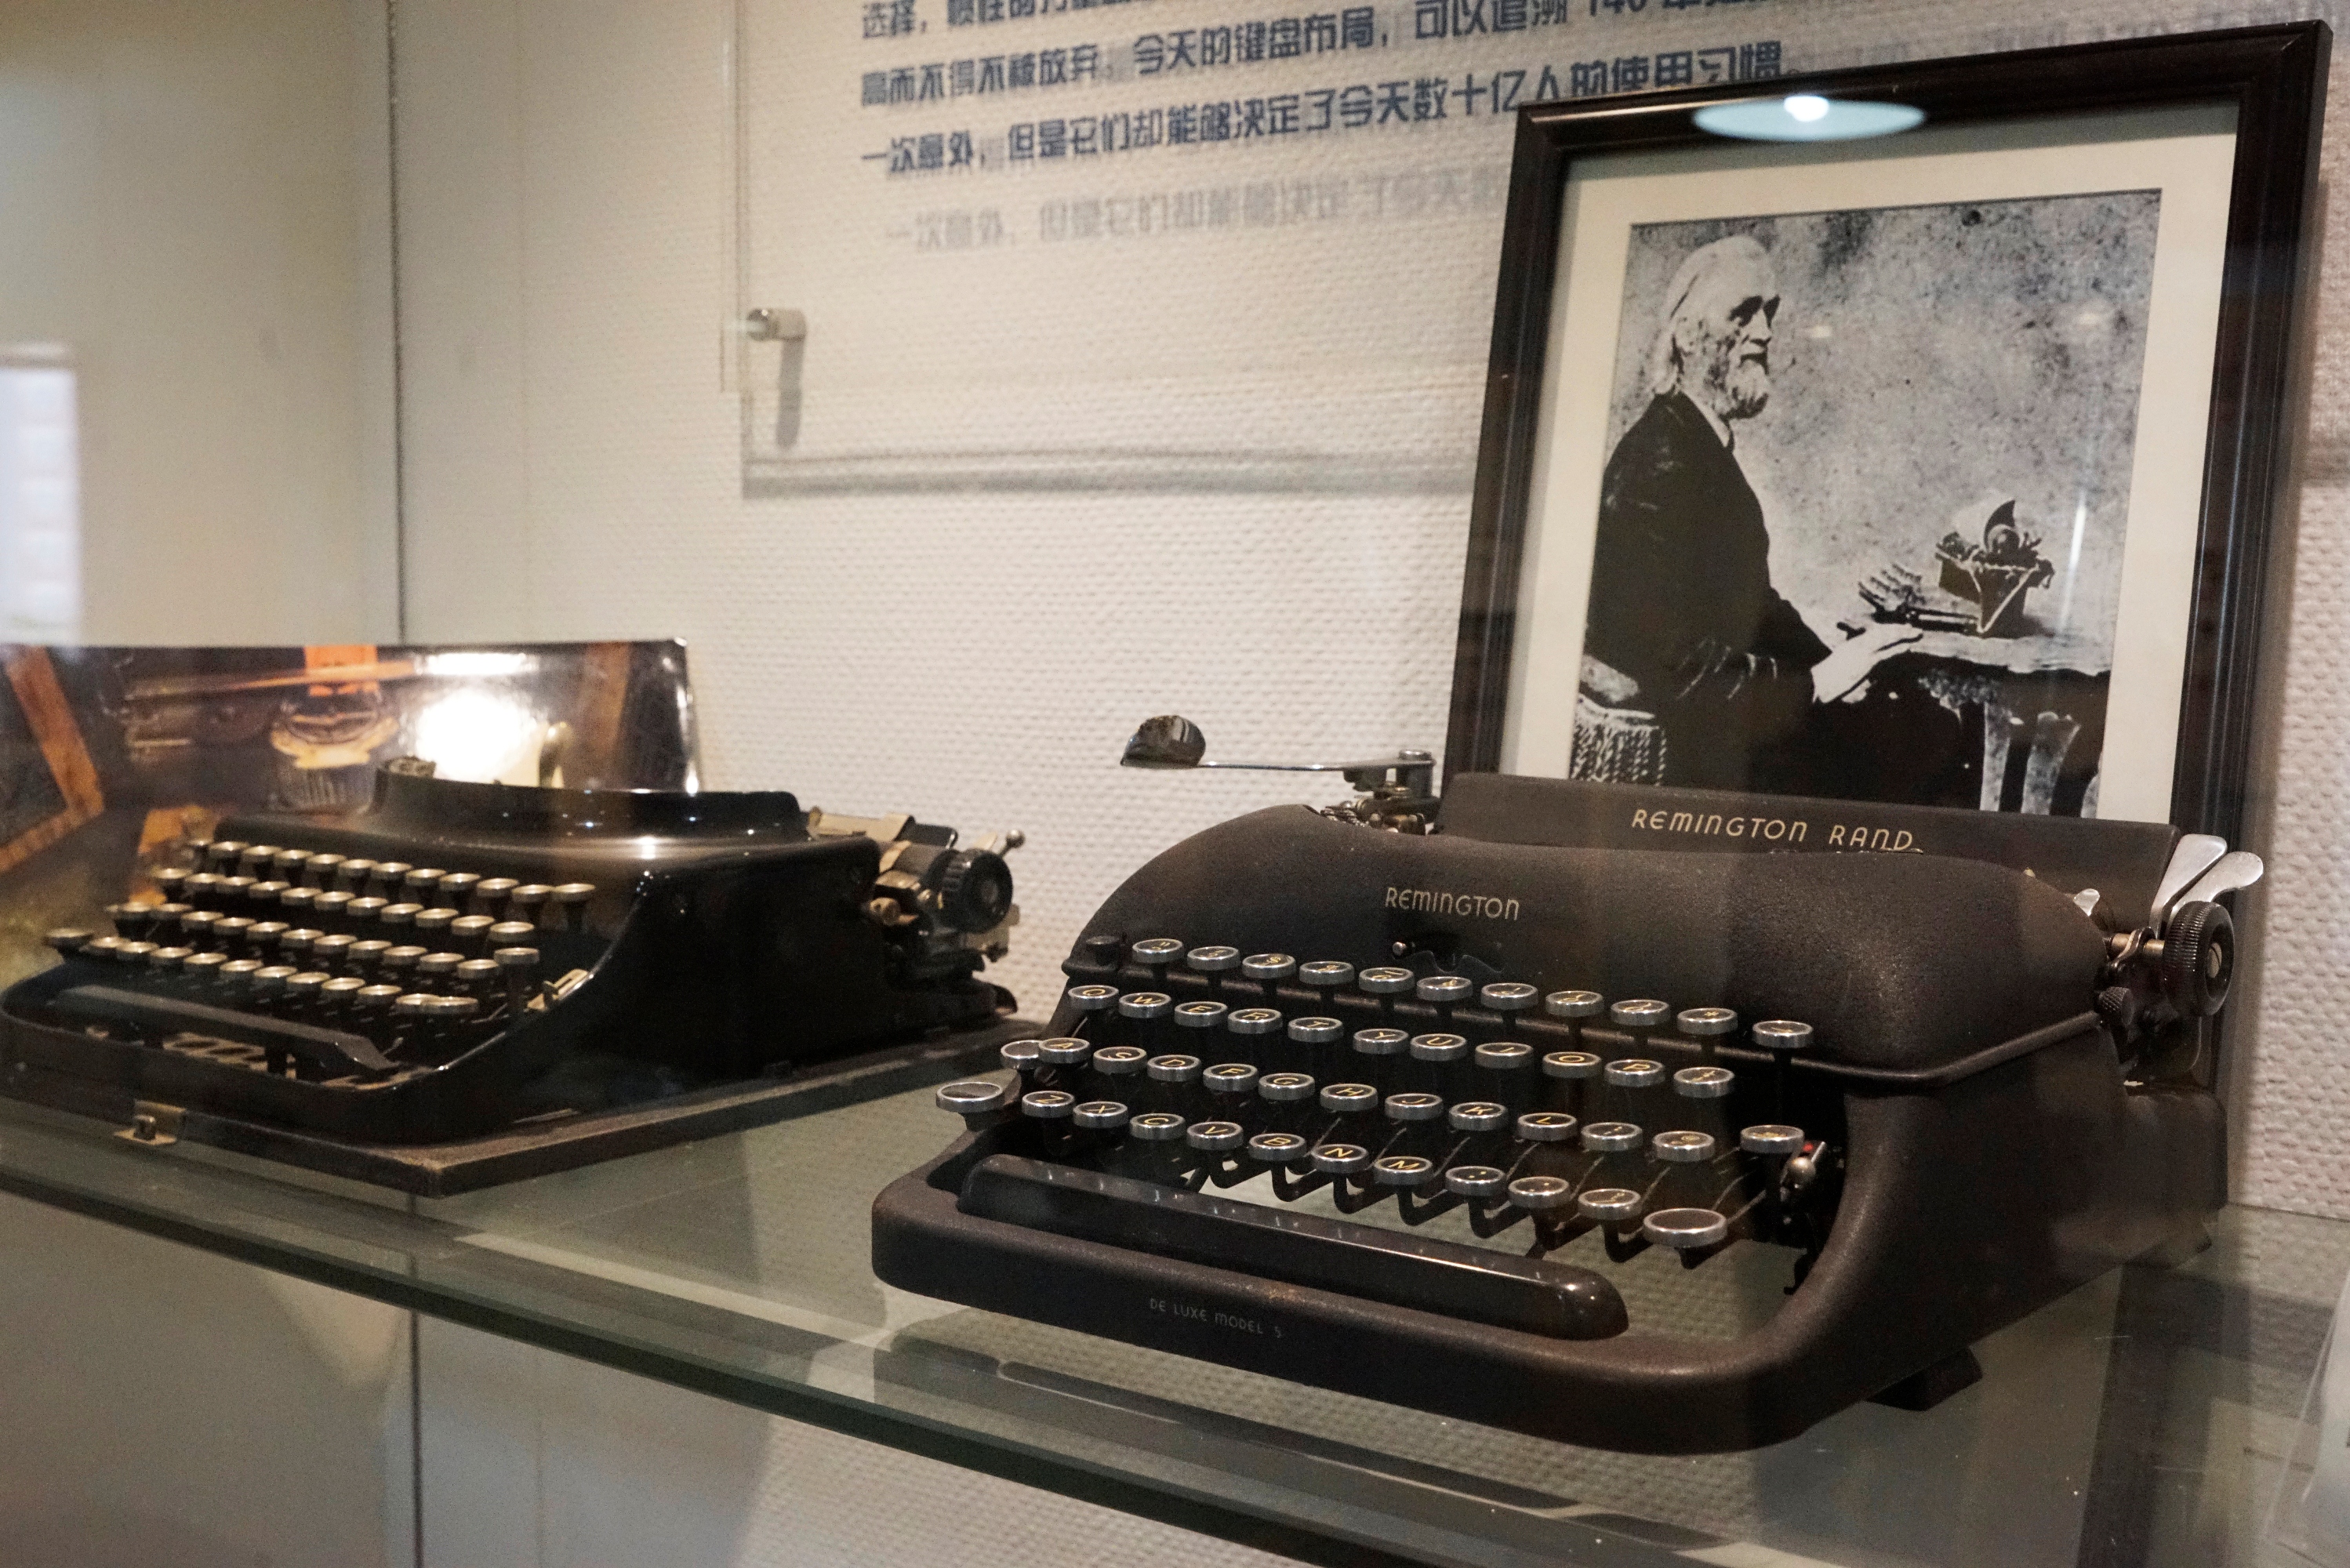 陆汉斌打字机博物馆